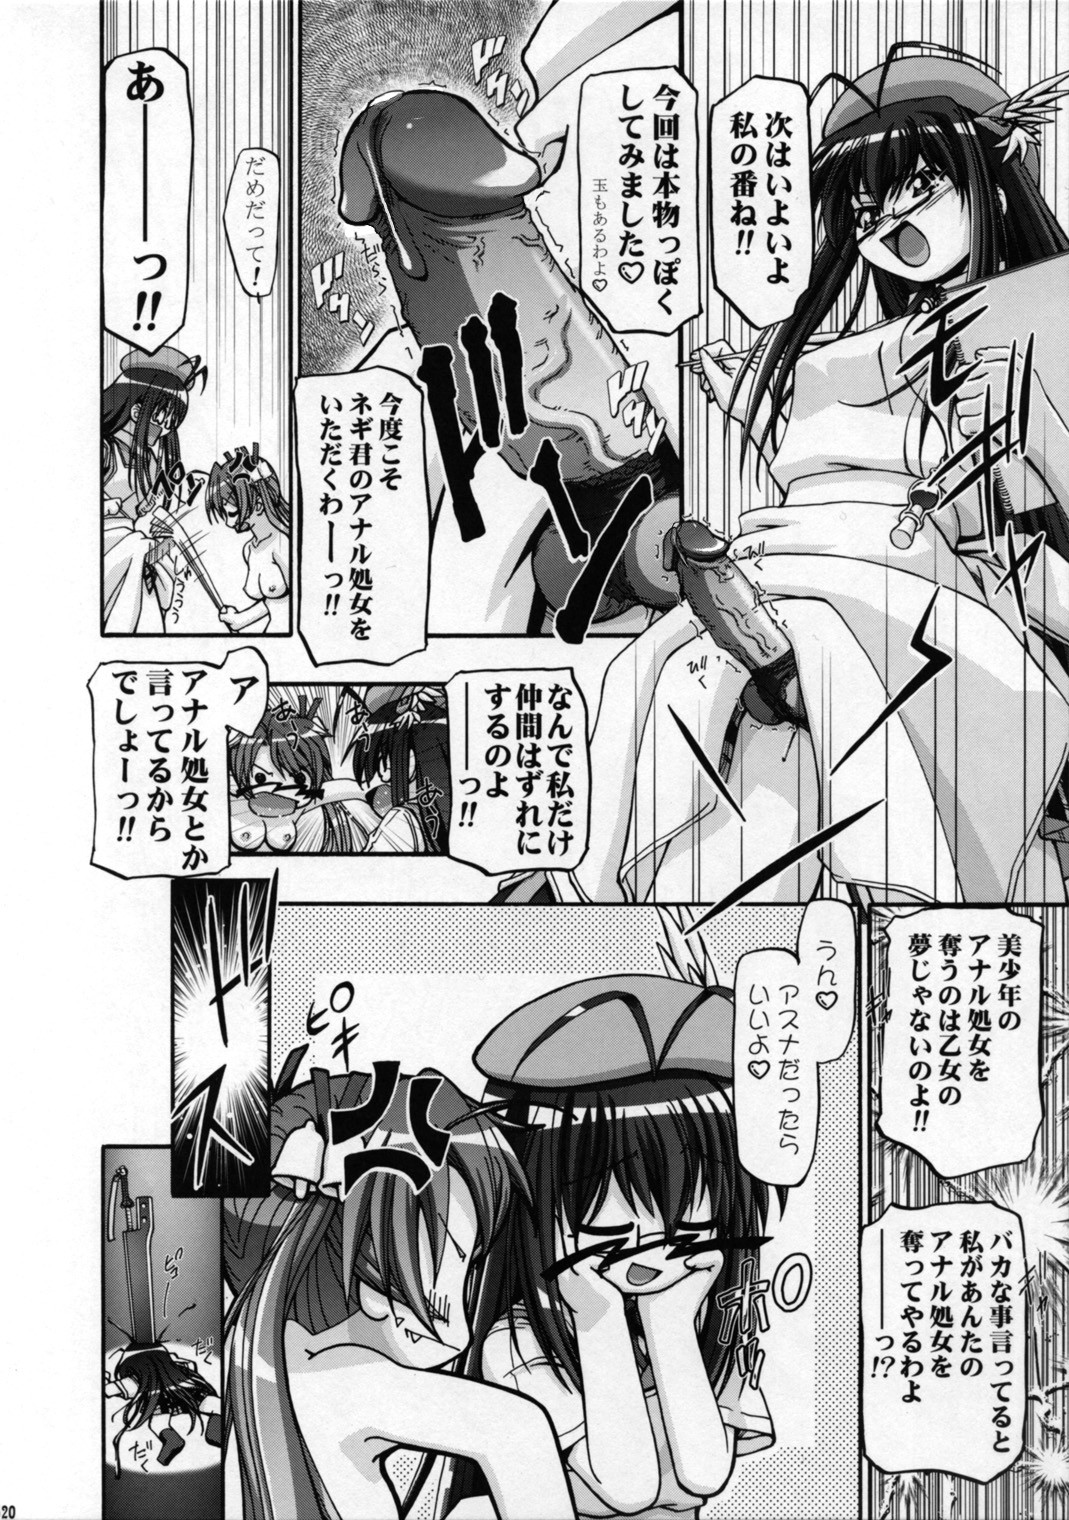 (SC36) [Gambler Club (Kousaka Jun)] Mahora Gakuen TyuuToubo 3-A 2 Jikanme (Mahou Sensei Negima!) [Decensored] page 19 full